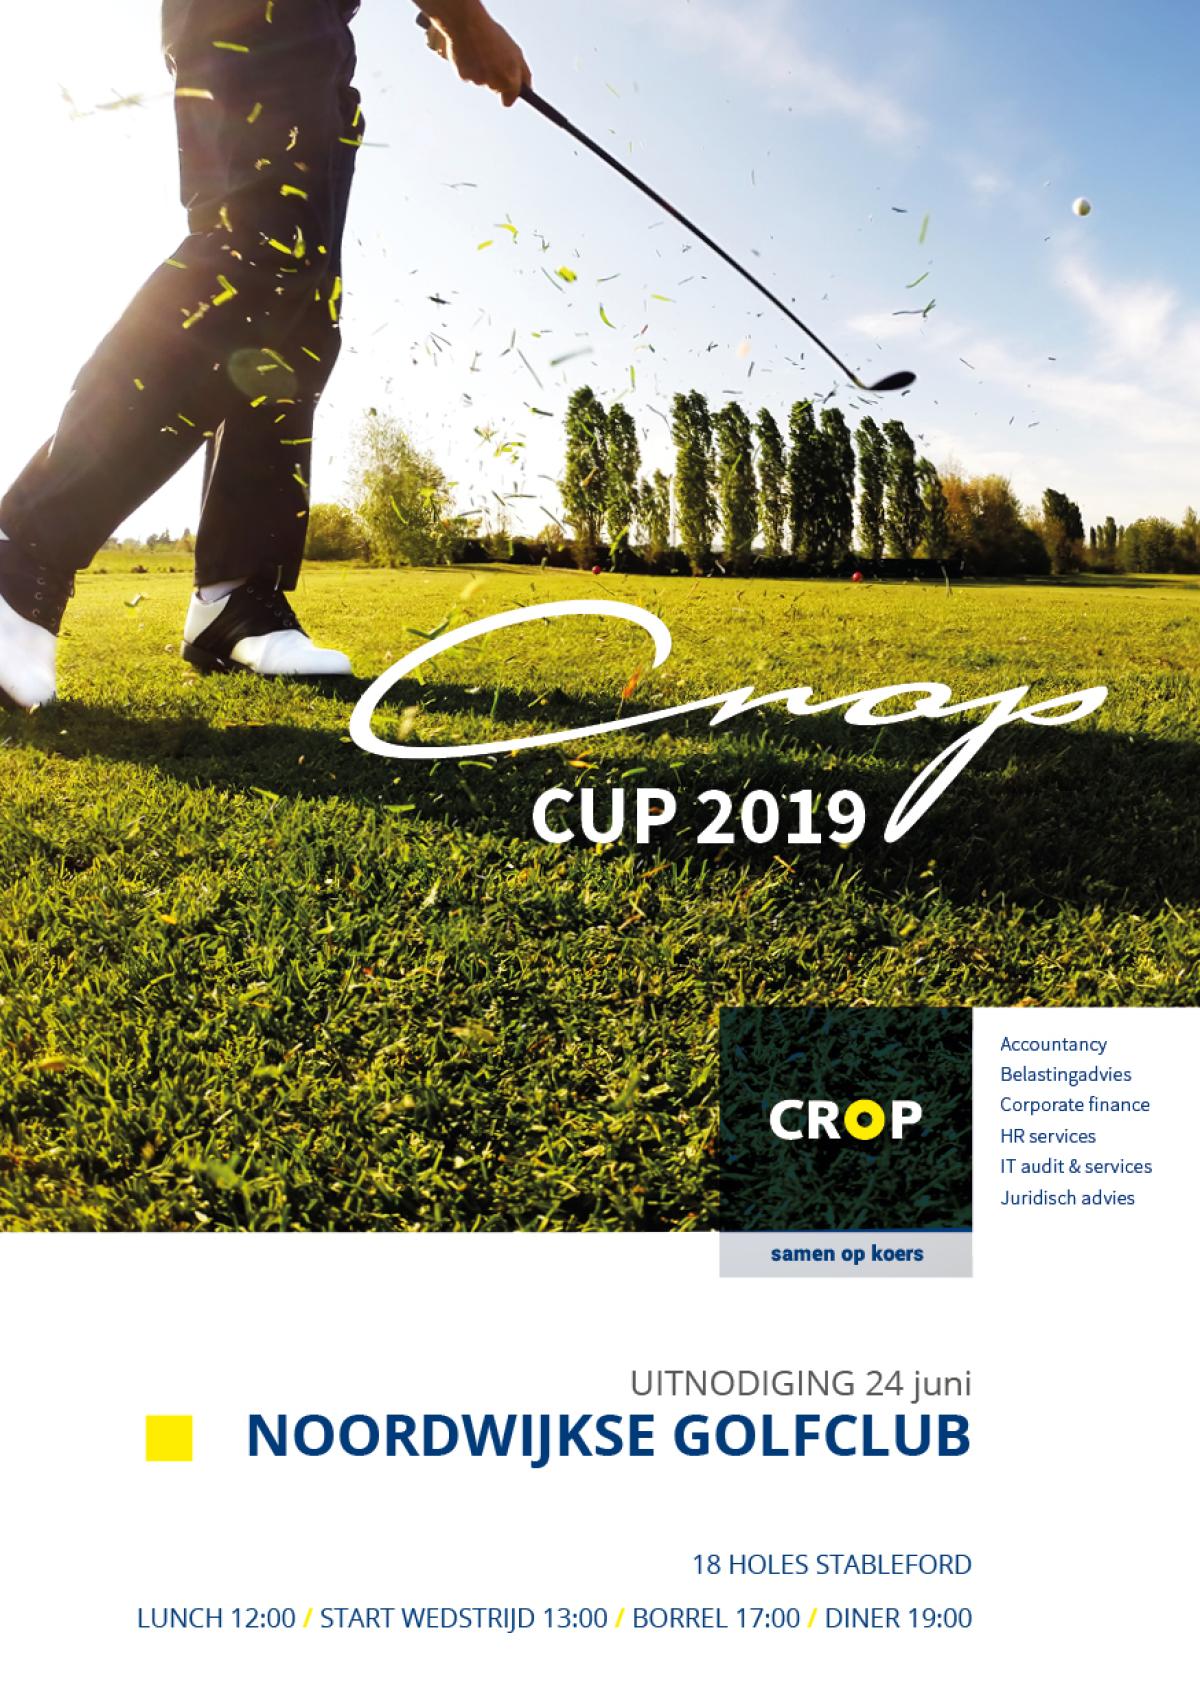 Crop - Crop cup 2019